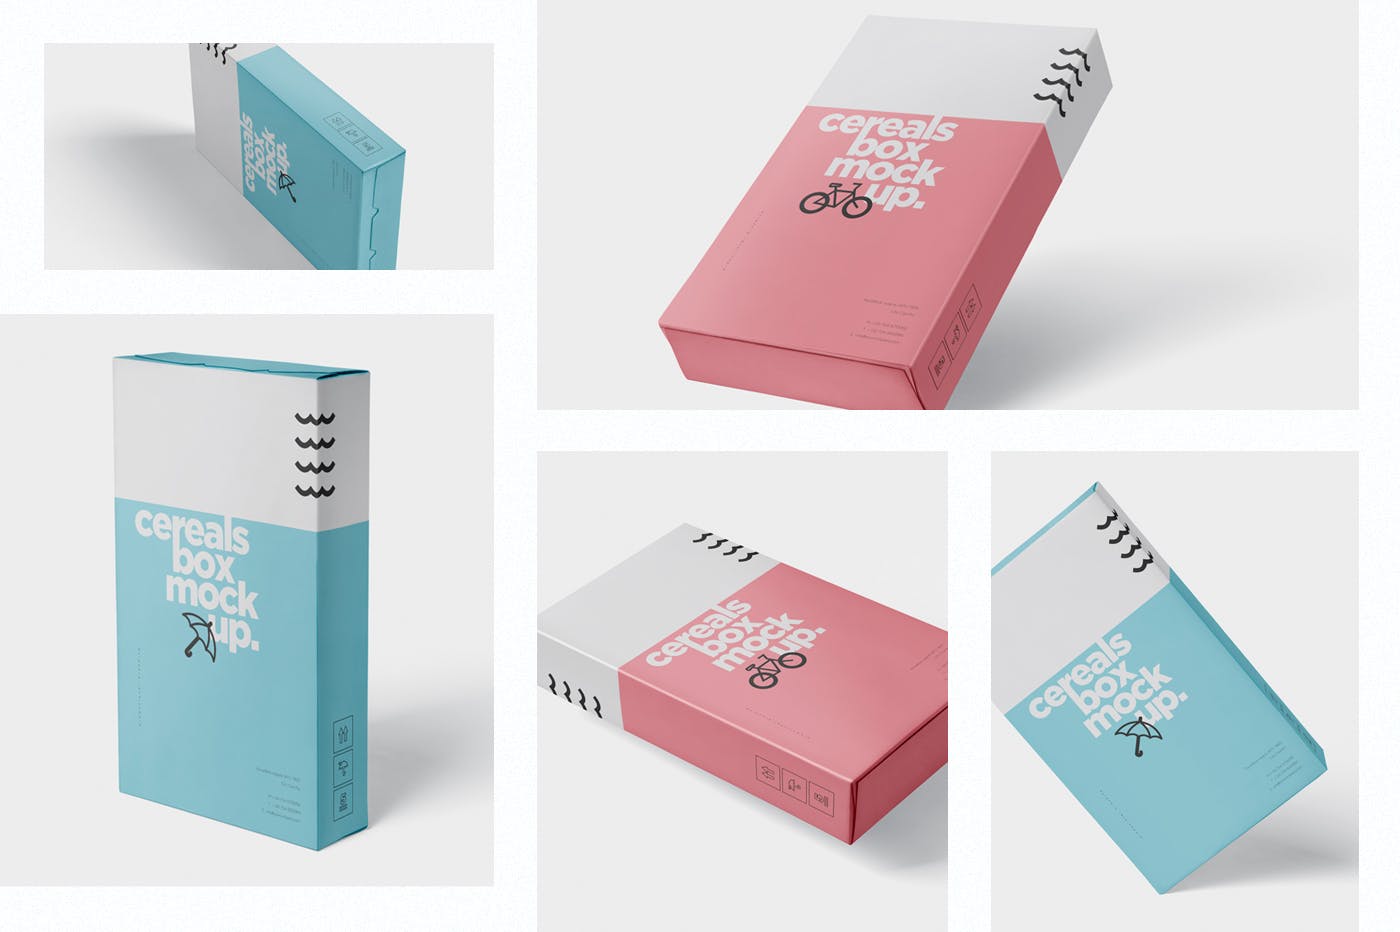 香烟/避孕套/扑克牌适用的超薄包装盒外观设计样机 Cereals Box Mockup – Slim Size Box插图(1)